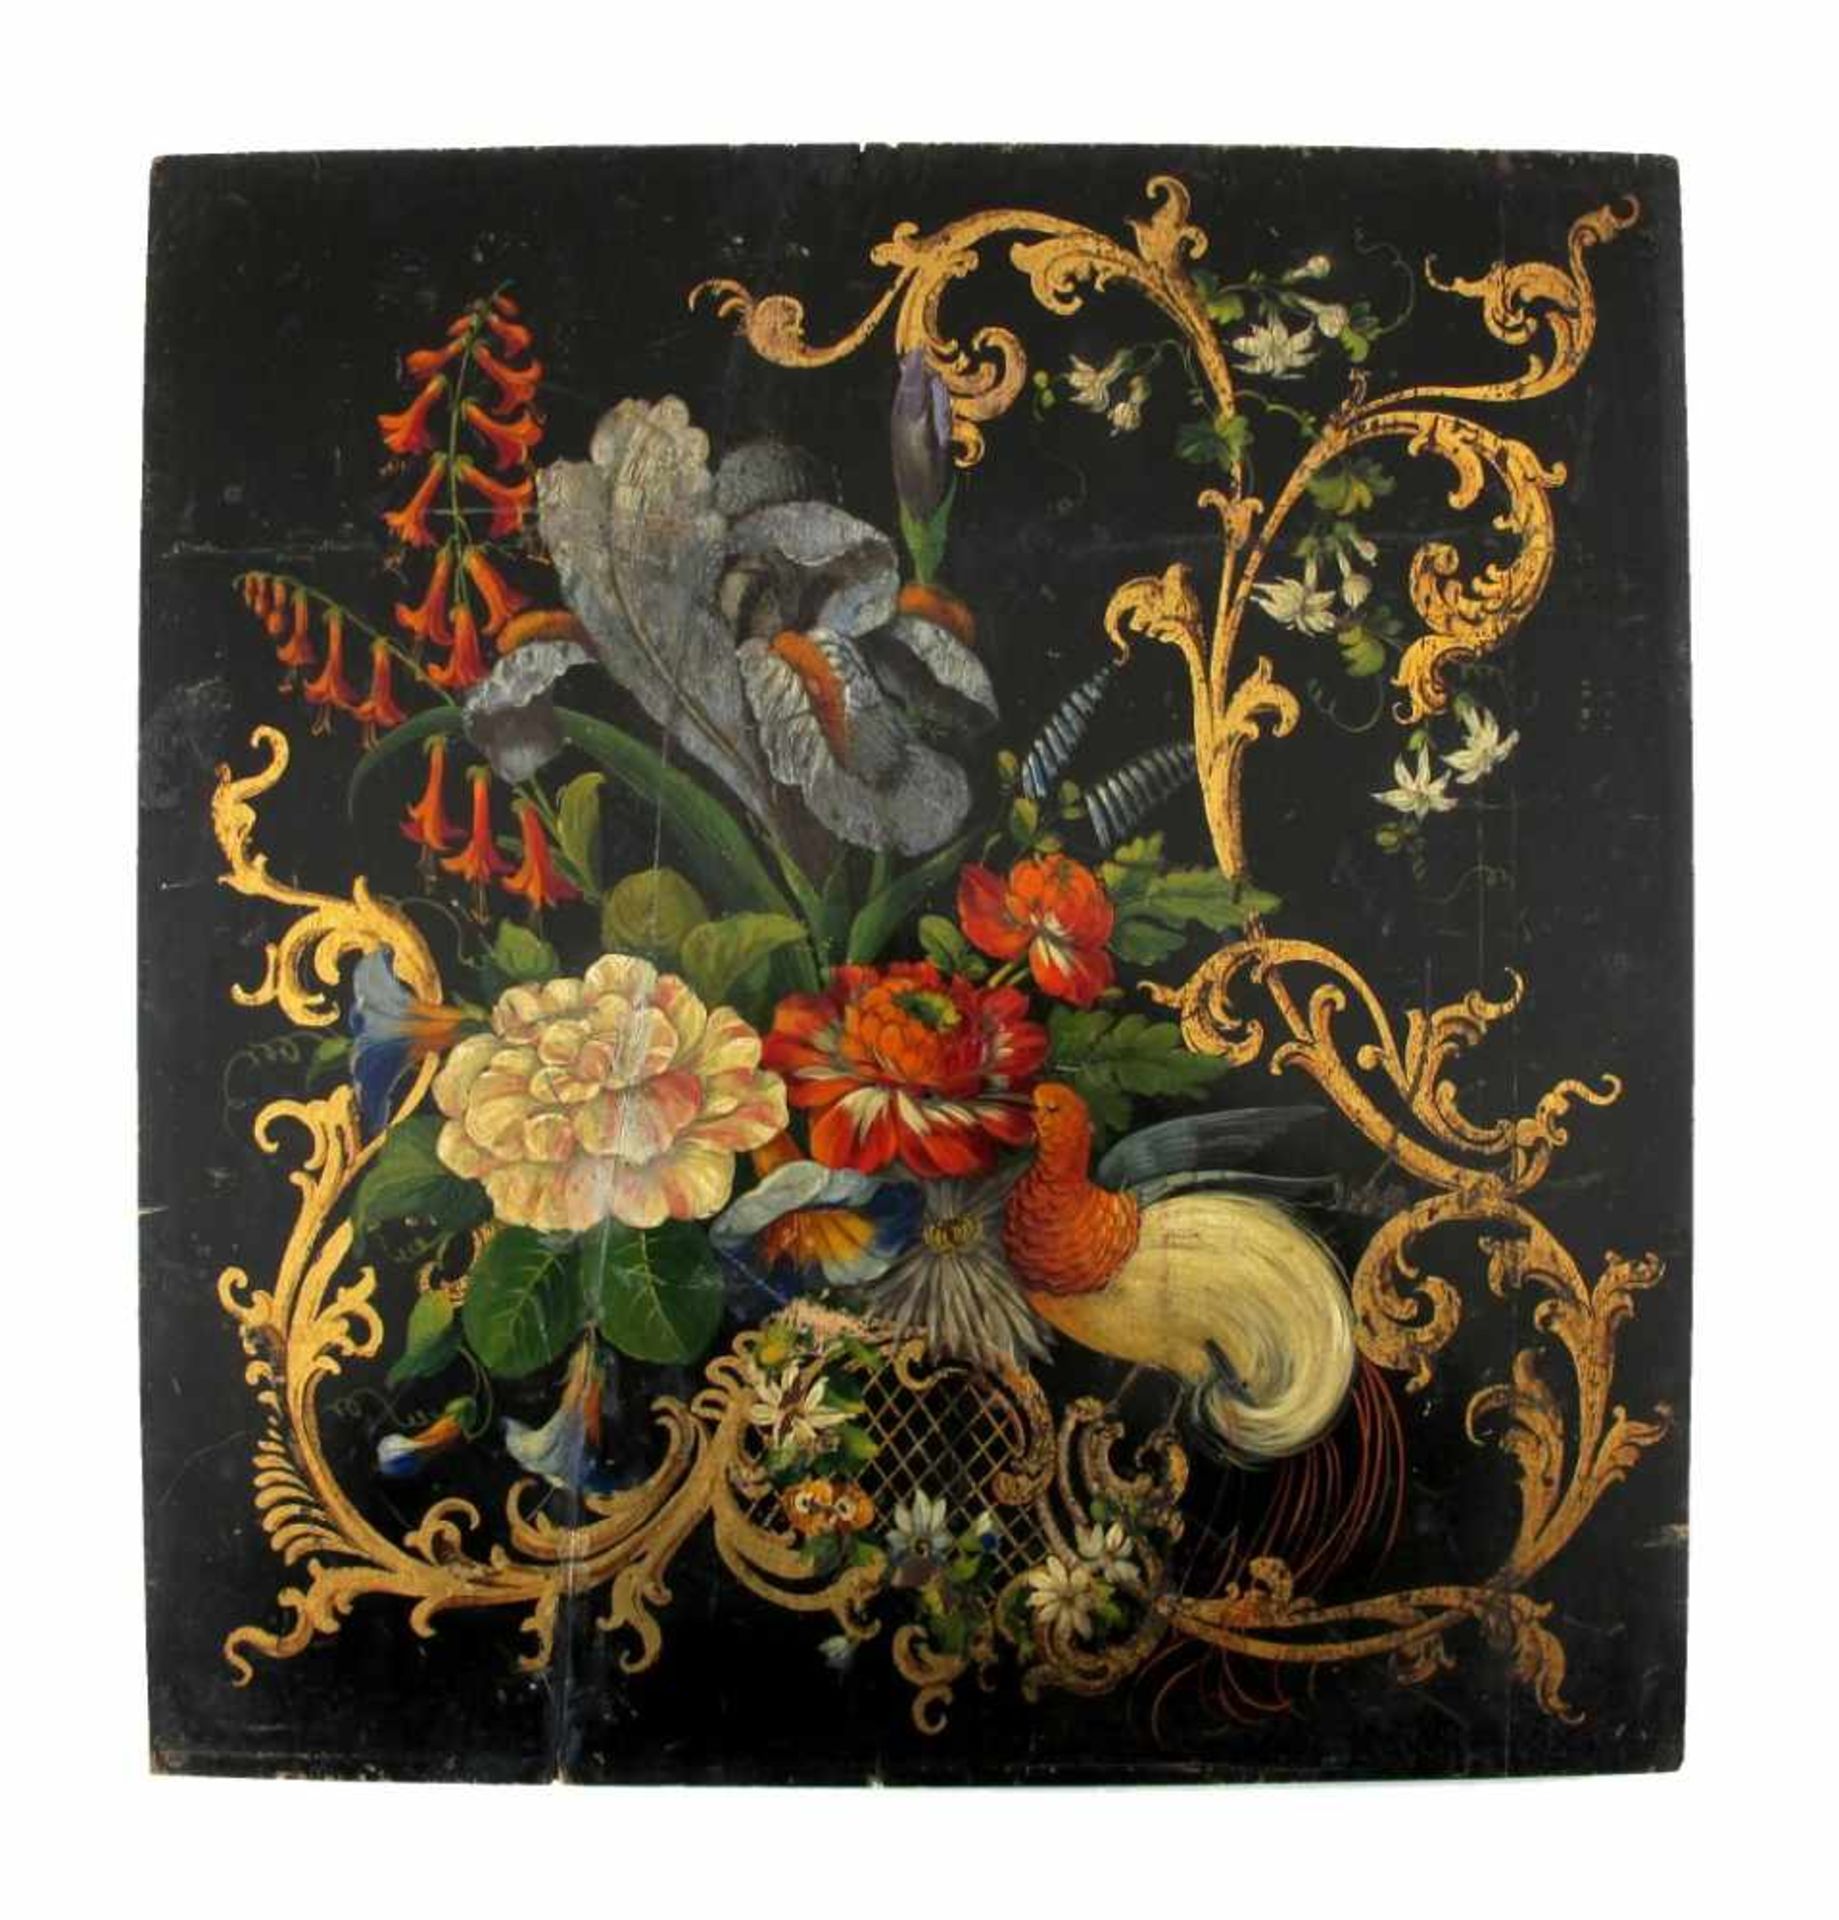 Wandpaneel. Auf schwarzem Grund polychrome Malerei mit Blüten, Vogel und Goldranken. Um 1900. 35 x